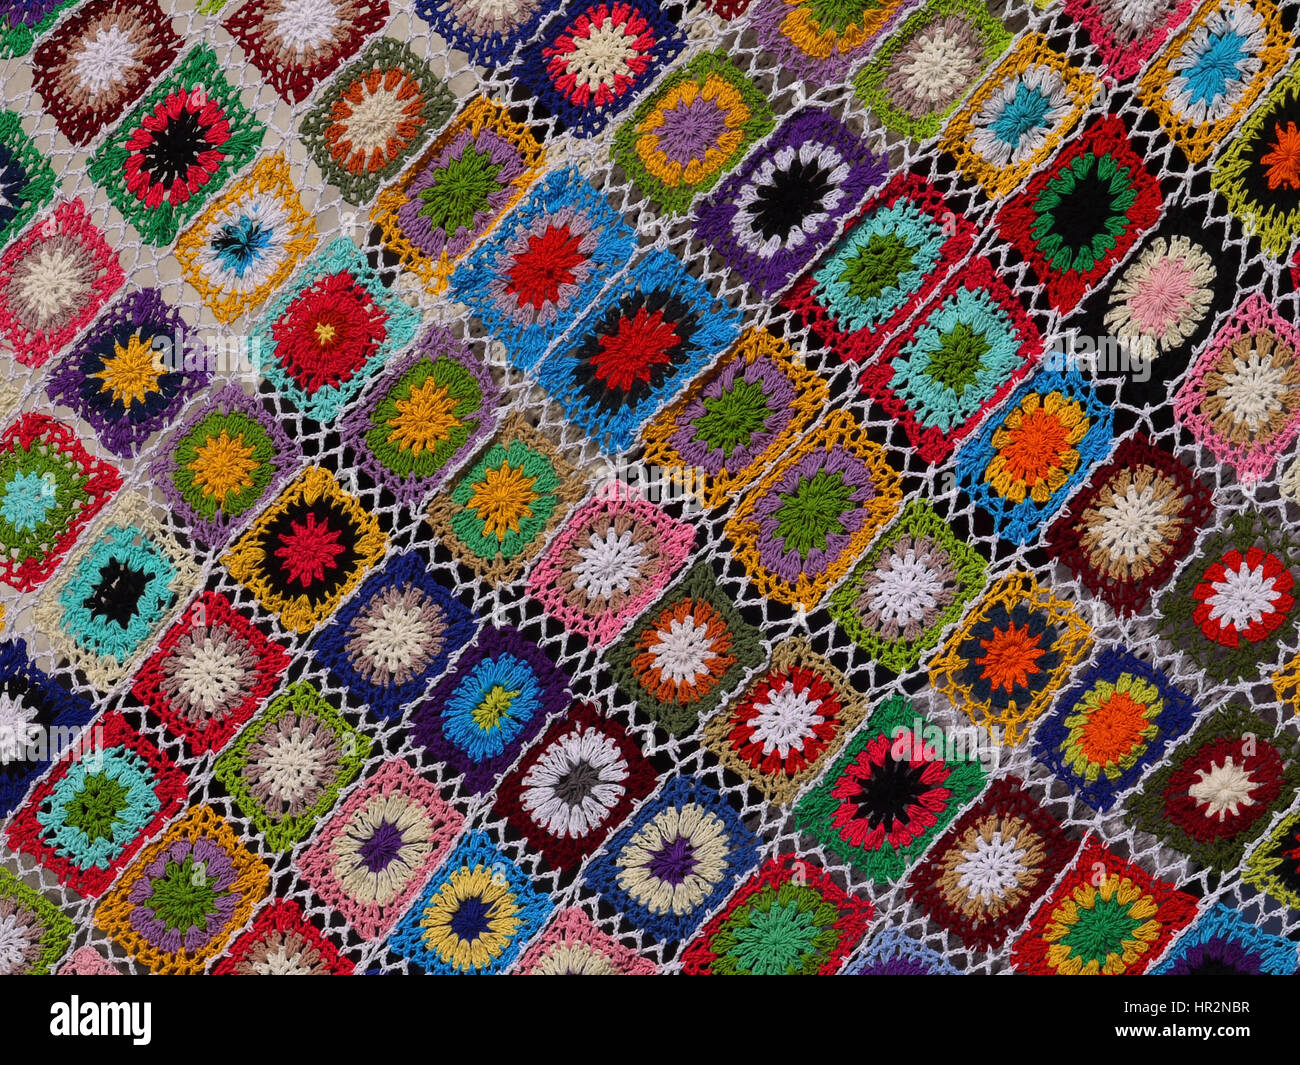 Couvre-lit au crochet colorés, Indonésie Banque D'Images